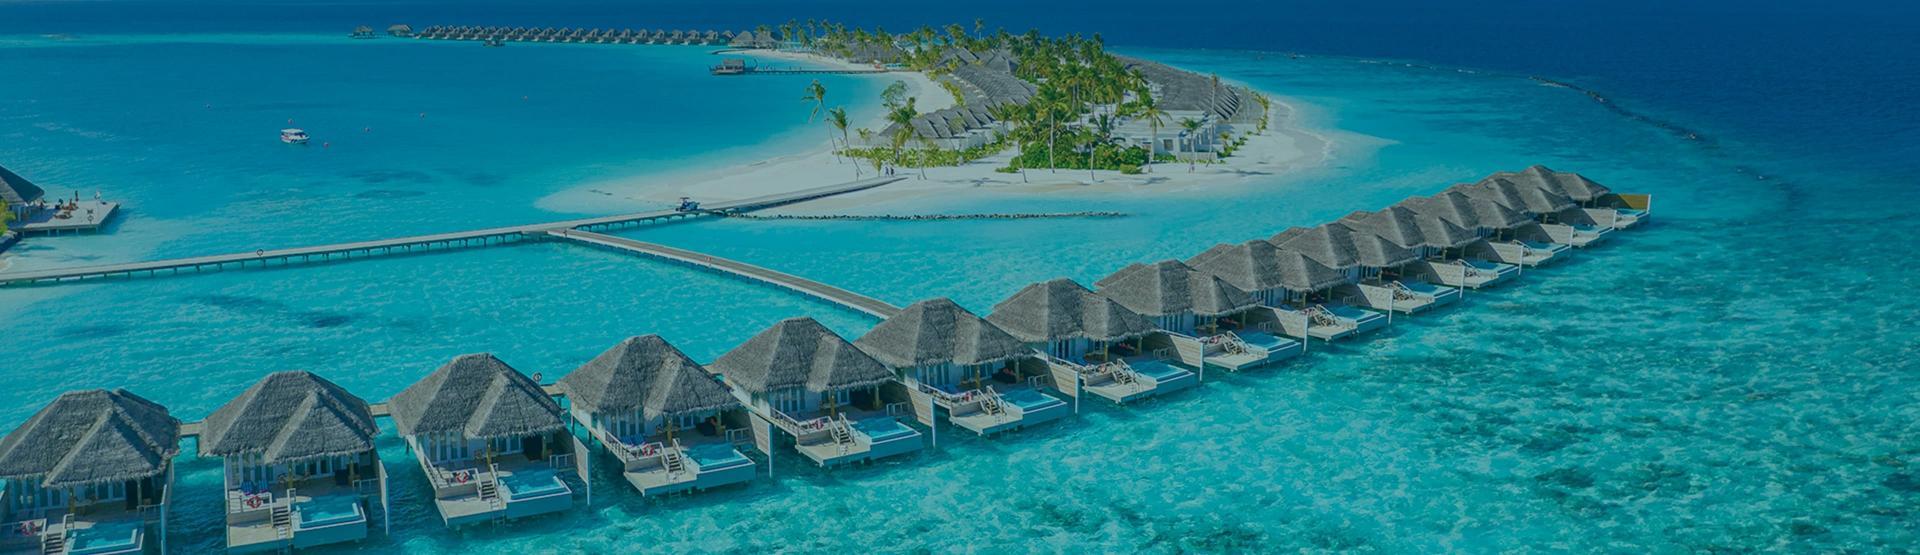 ابحث عن أفضل الفنادق في جزر المالديف